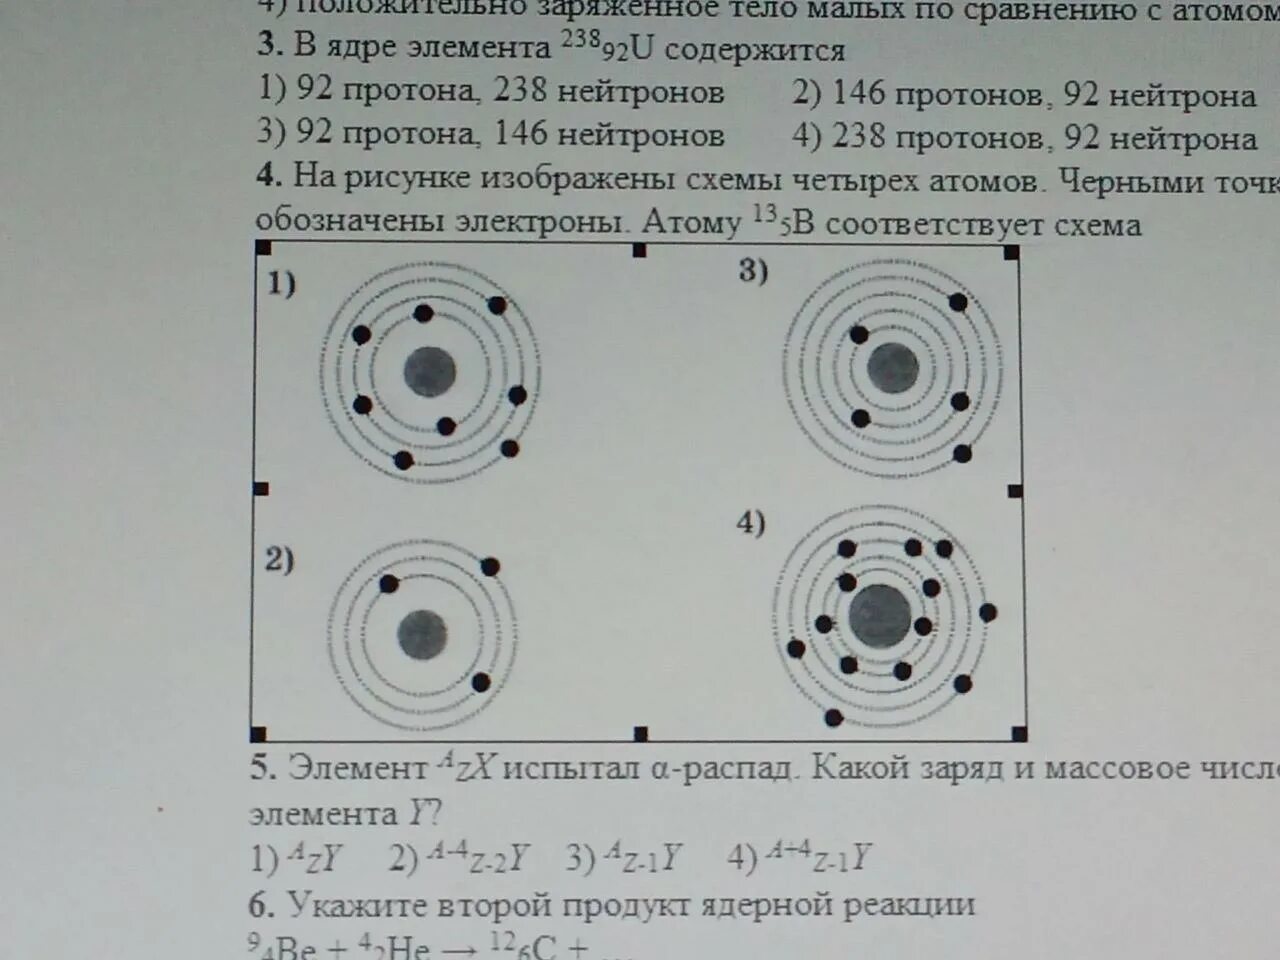 Атому 13b5 соответствует схема. Электроны обозначены черными точками атому 10 5. Схема атома 73 li. На рисунке изображены схемы четырех атомов. На рисунке изображены схемы четырех атомов черными